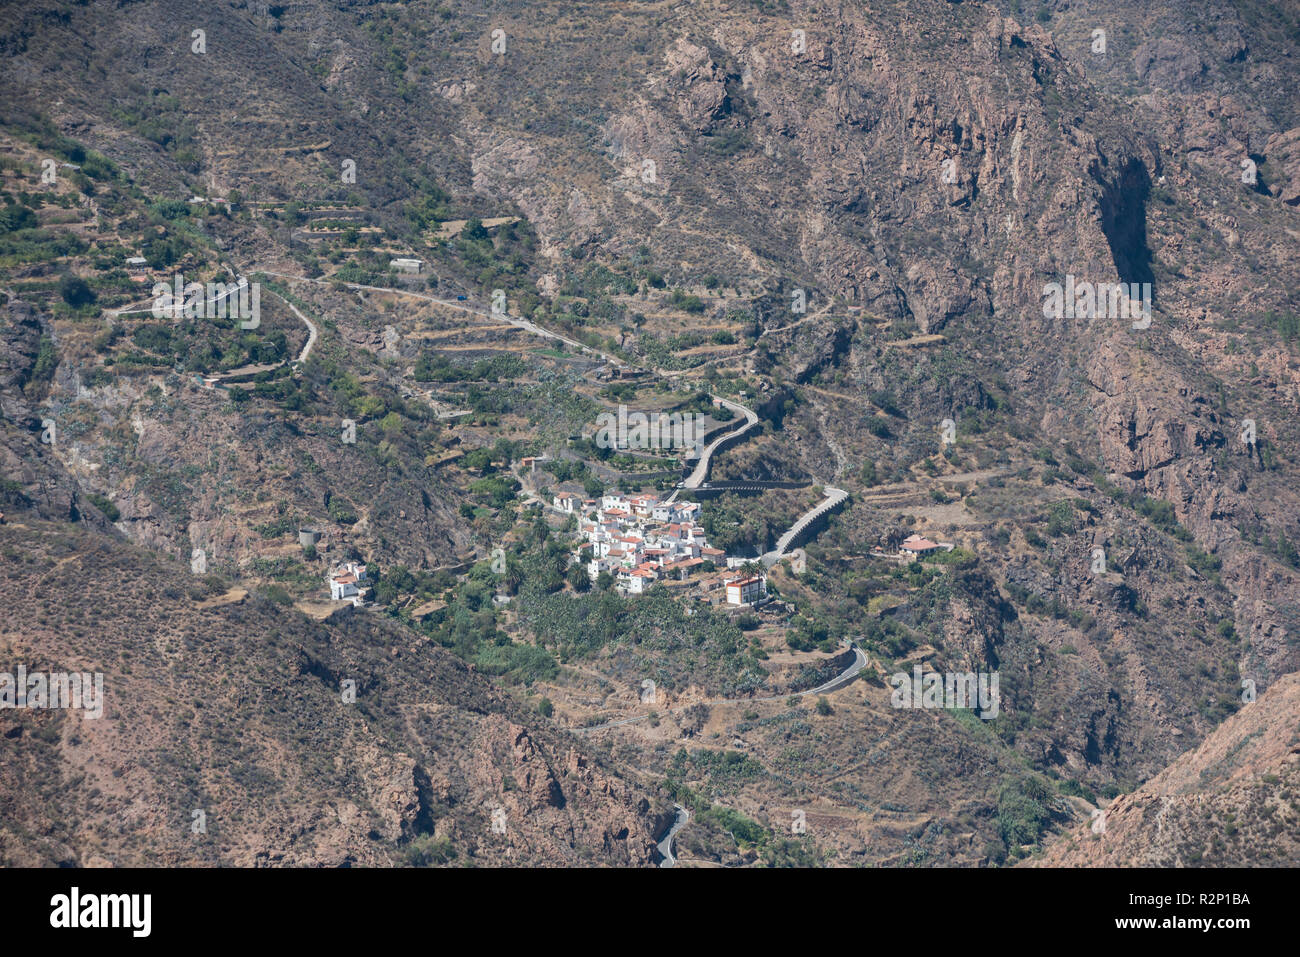 View across the Barranco del Chorrillo (Chorrillo valley) to the remote mountain village of El Chorrillo, Gran Canaria, Spain. Stock Photo